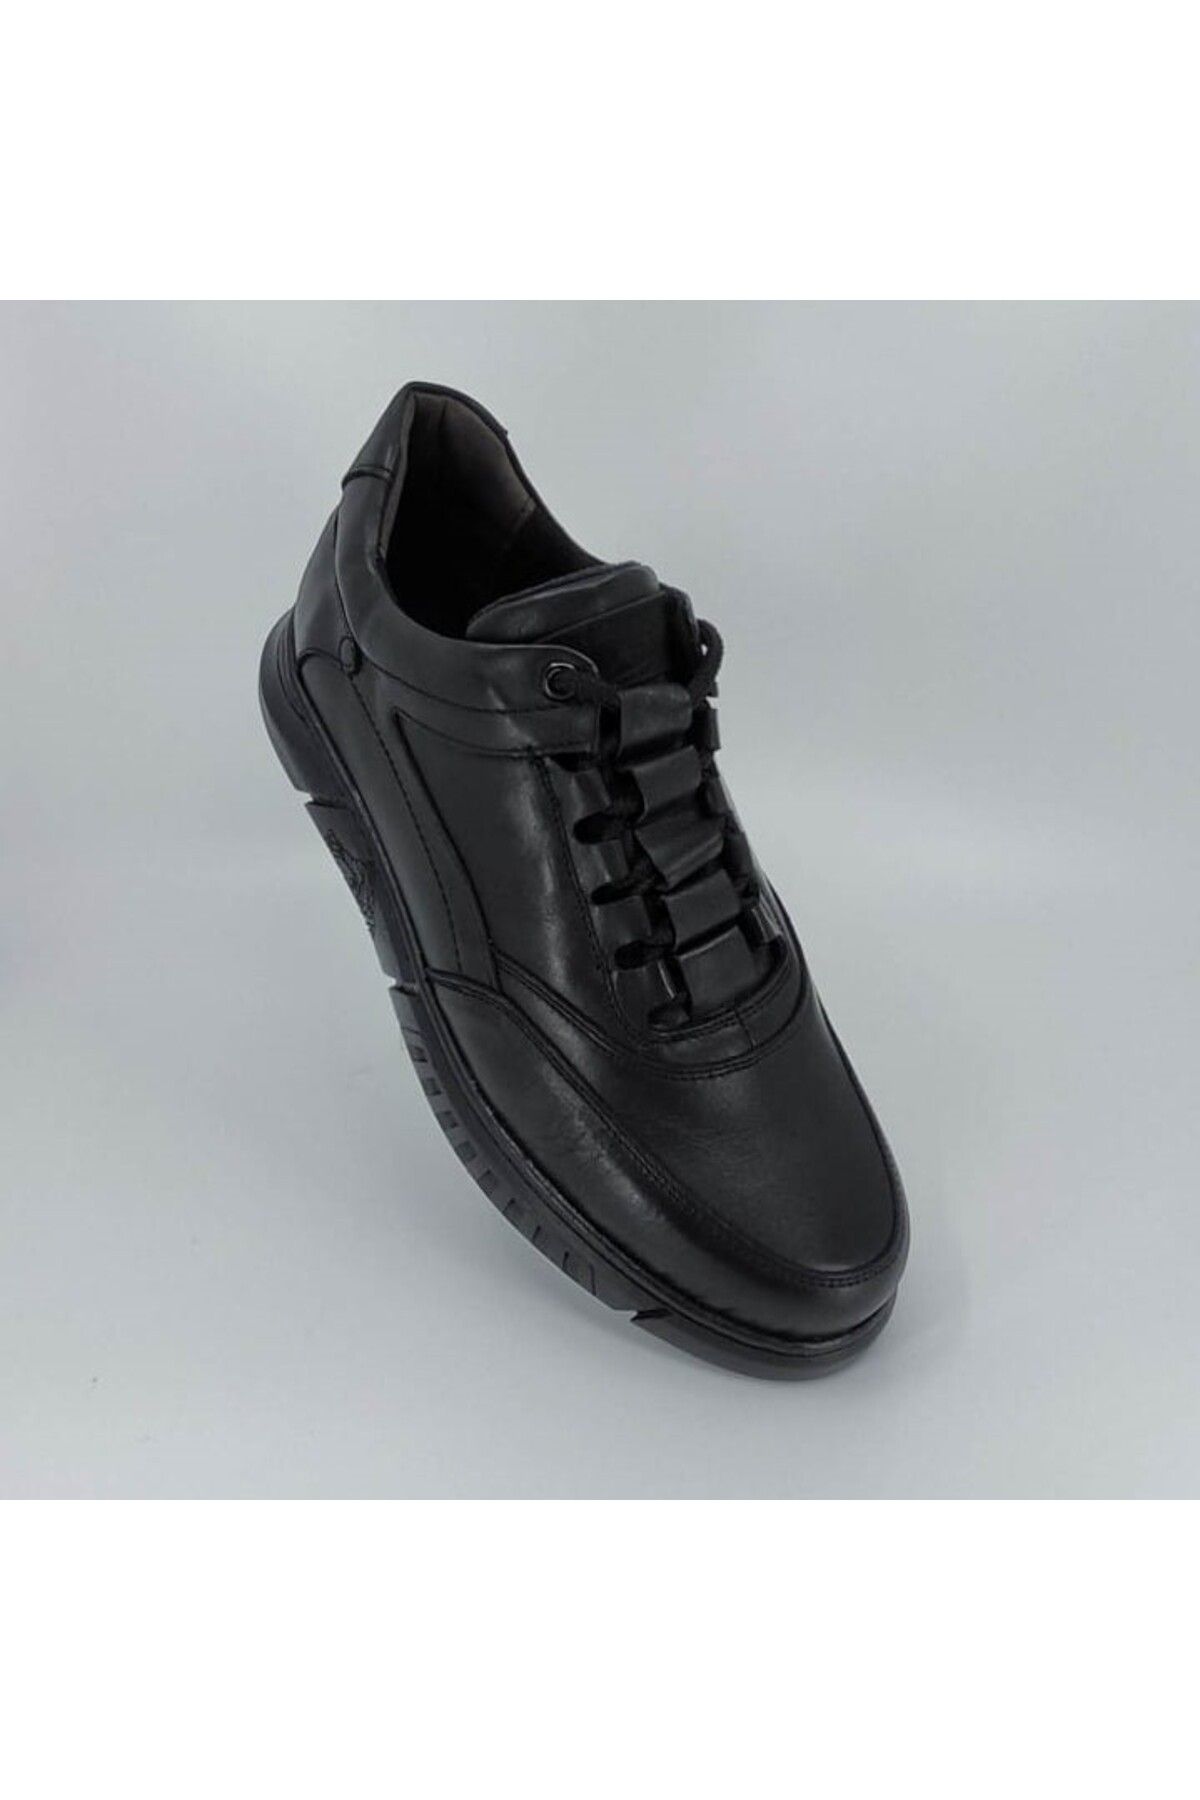 Modesa Erkek Derı Erkekl Ayakkabı Sıyah 40-44 Siyah